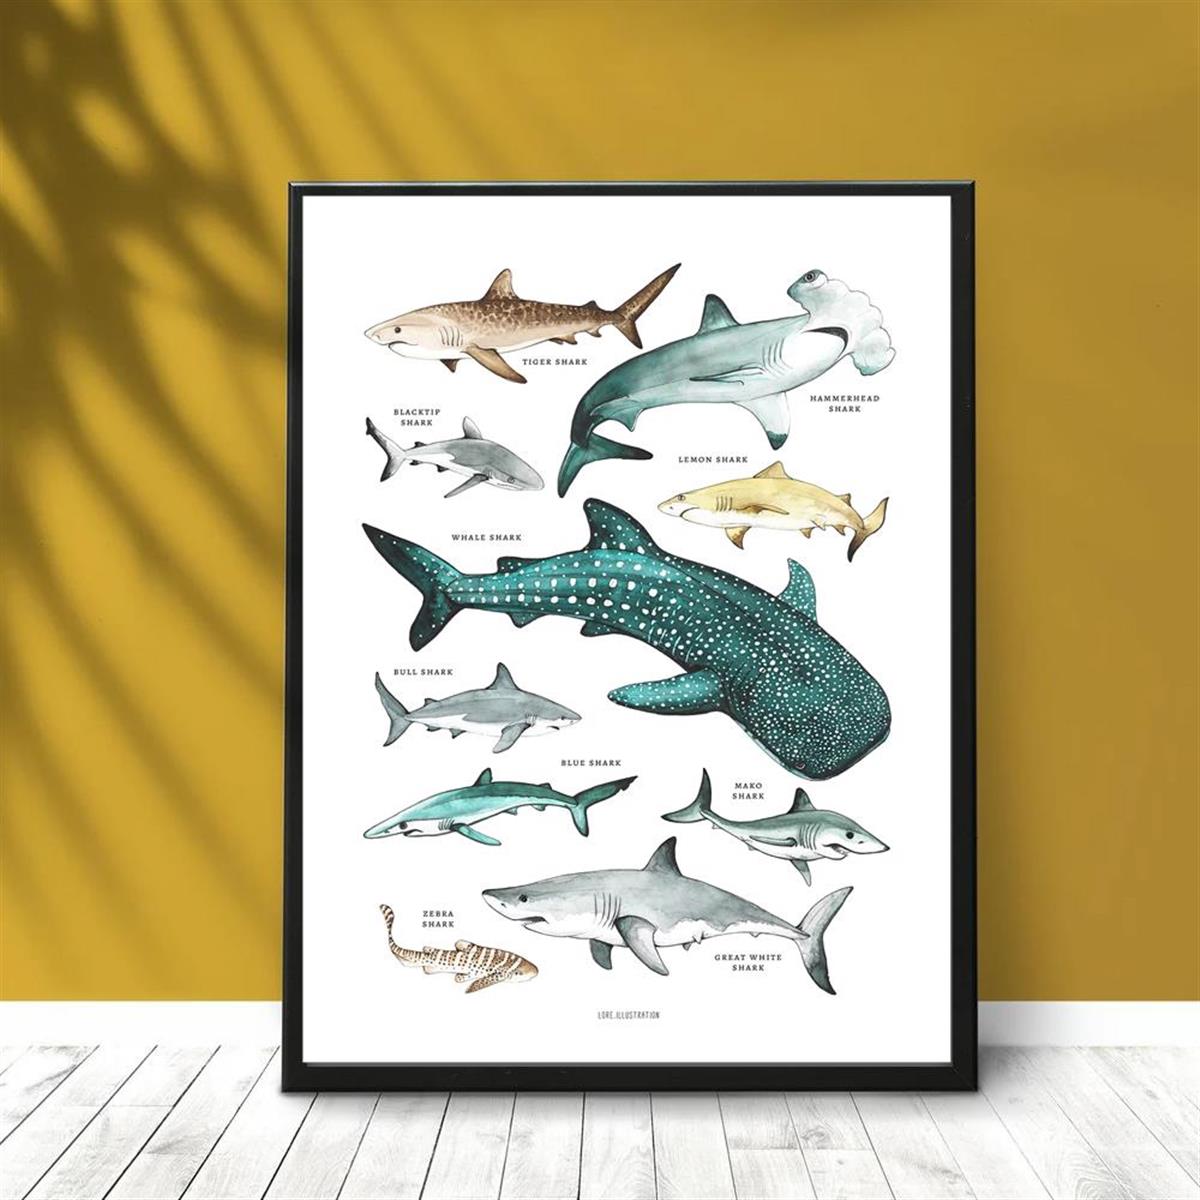 1pcアートキャンバスポスター キャンバスに描かれたサメの絵 サメの ...